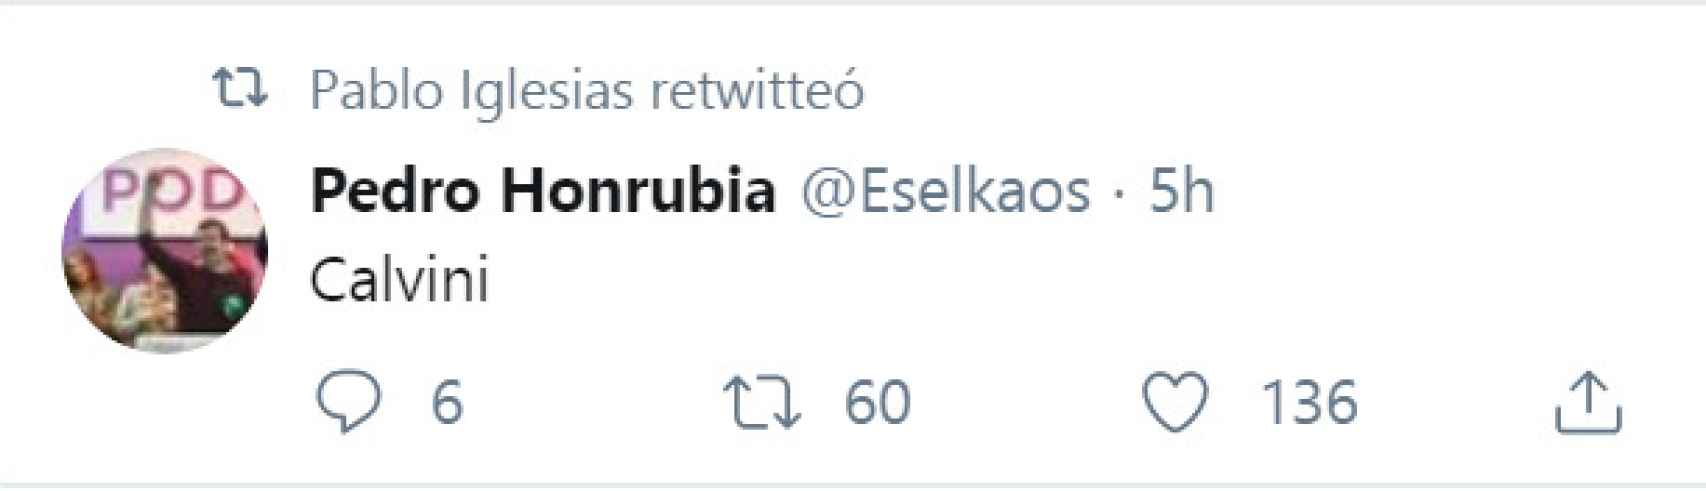 Tuit del diputado Pedro Honrubia retuiteado por Pablo Iglesias.